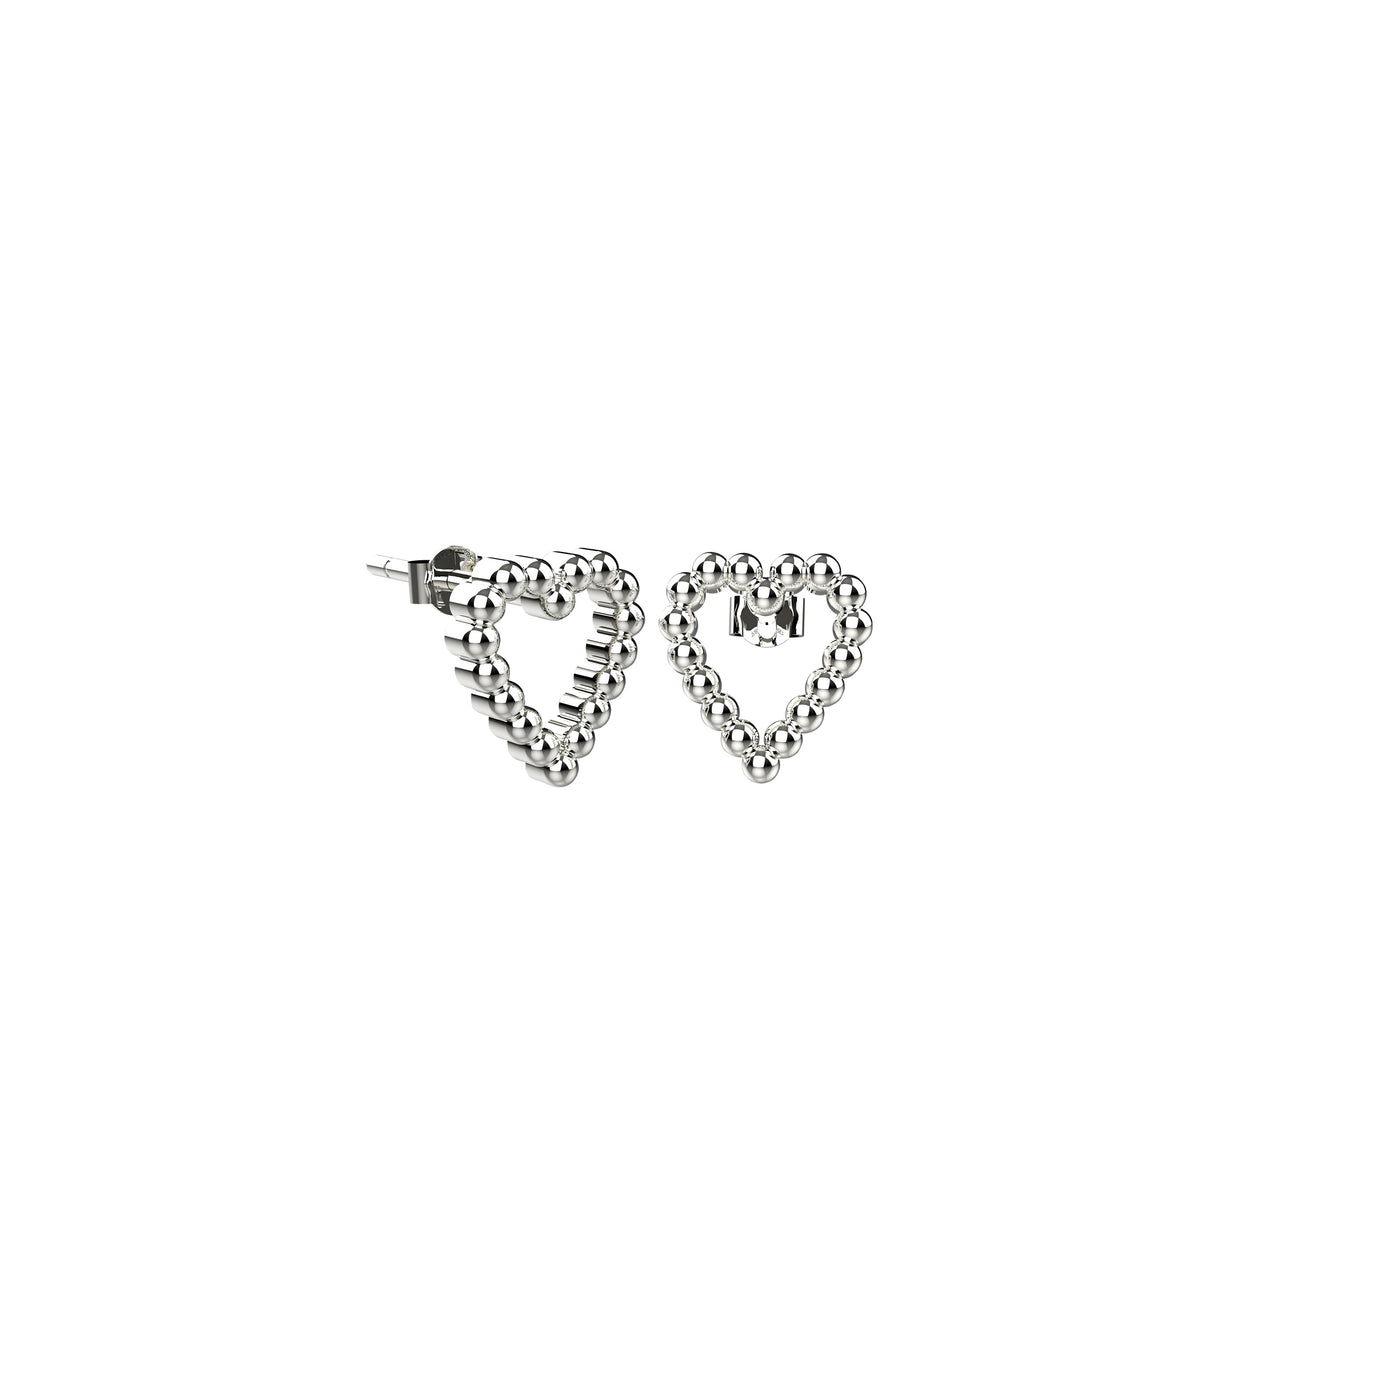 Heart Love Stud Earrings